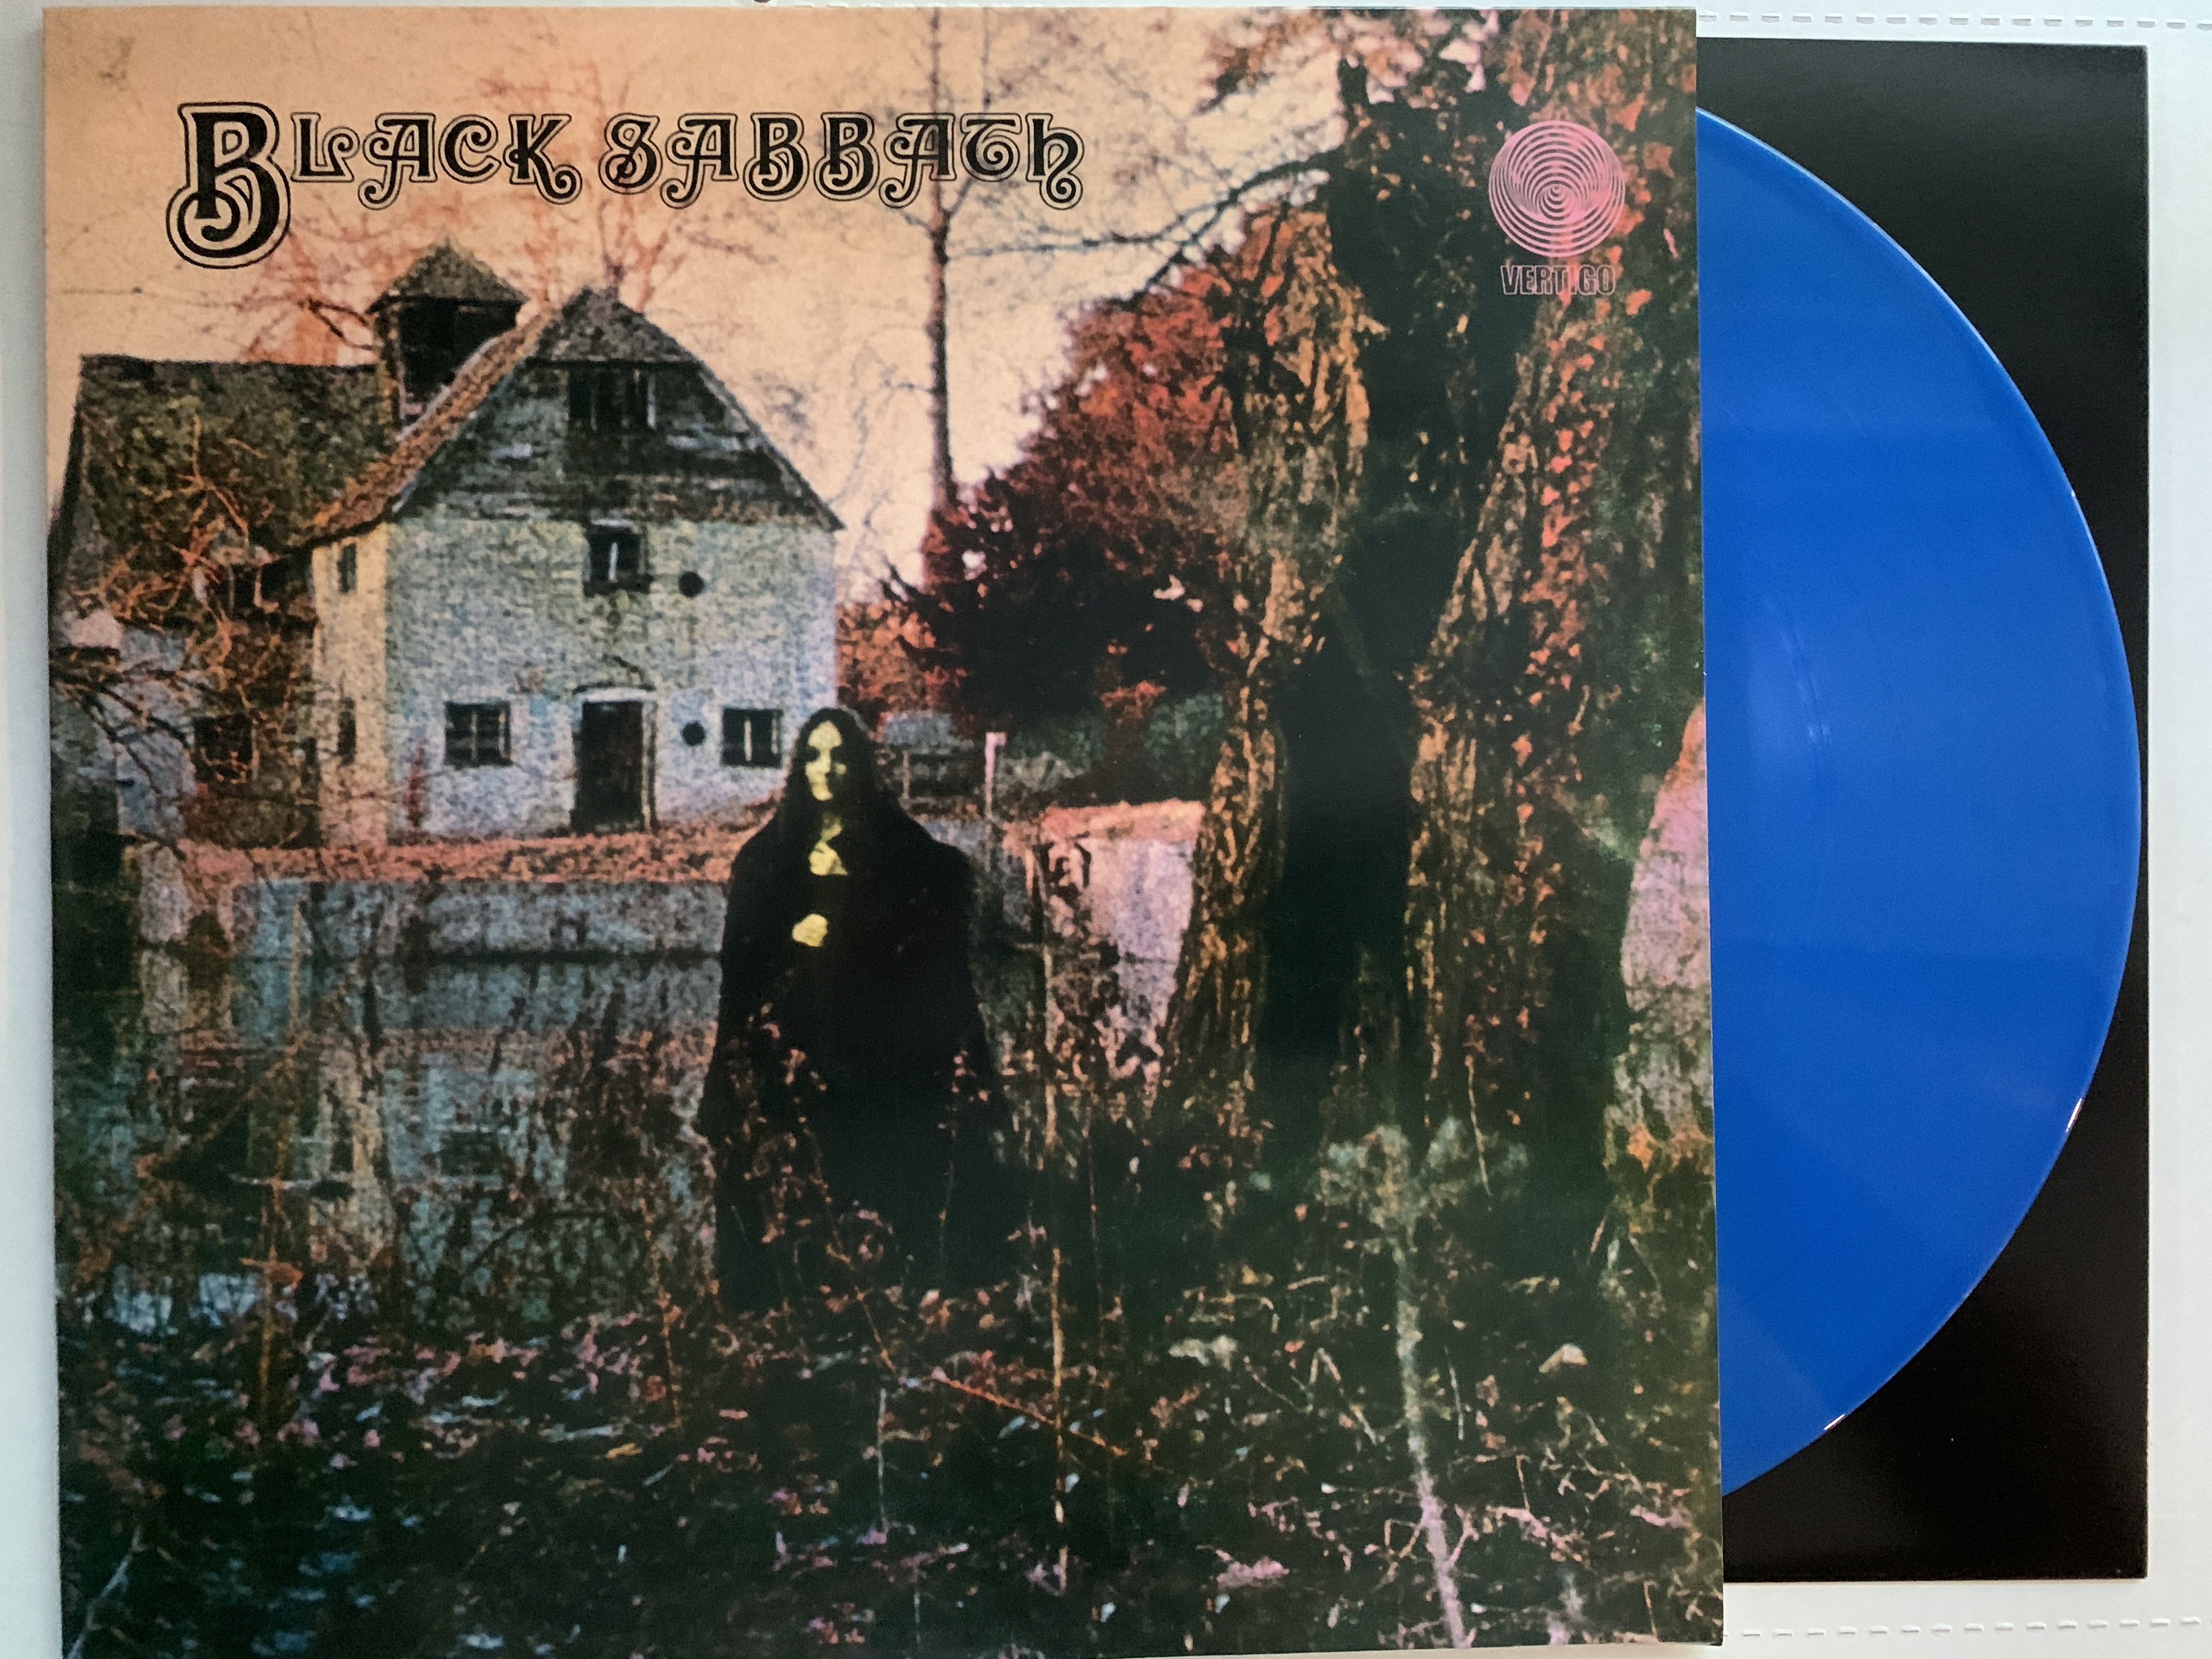 Black Sabbath 'Vol 4' 5LP 180g Black Vinyl Super Deluxe Edition Box Set